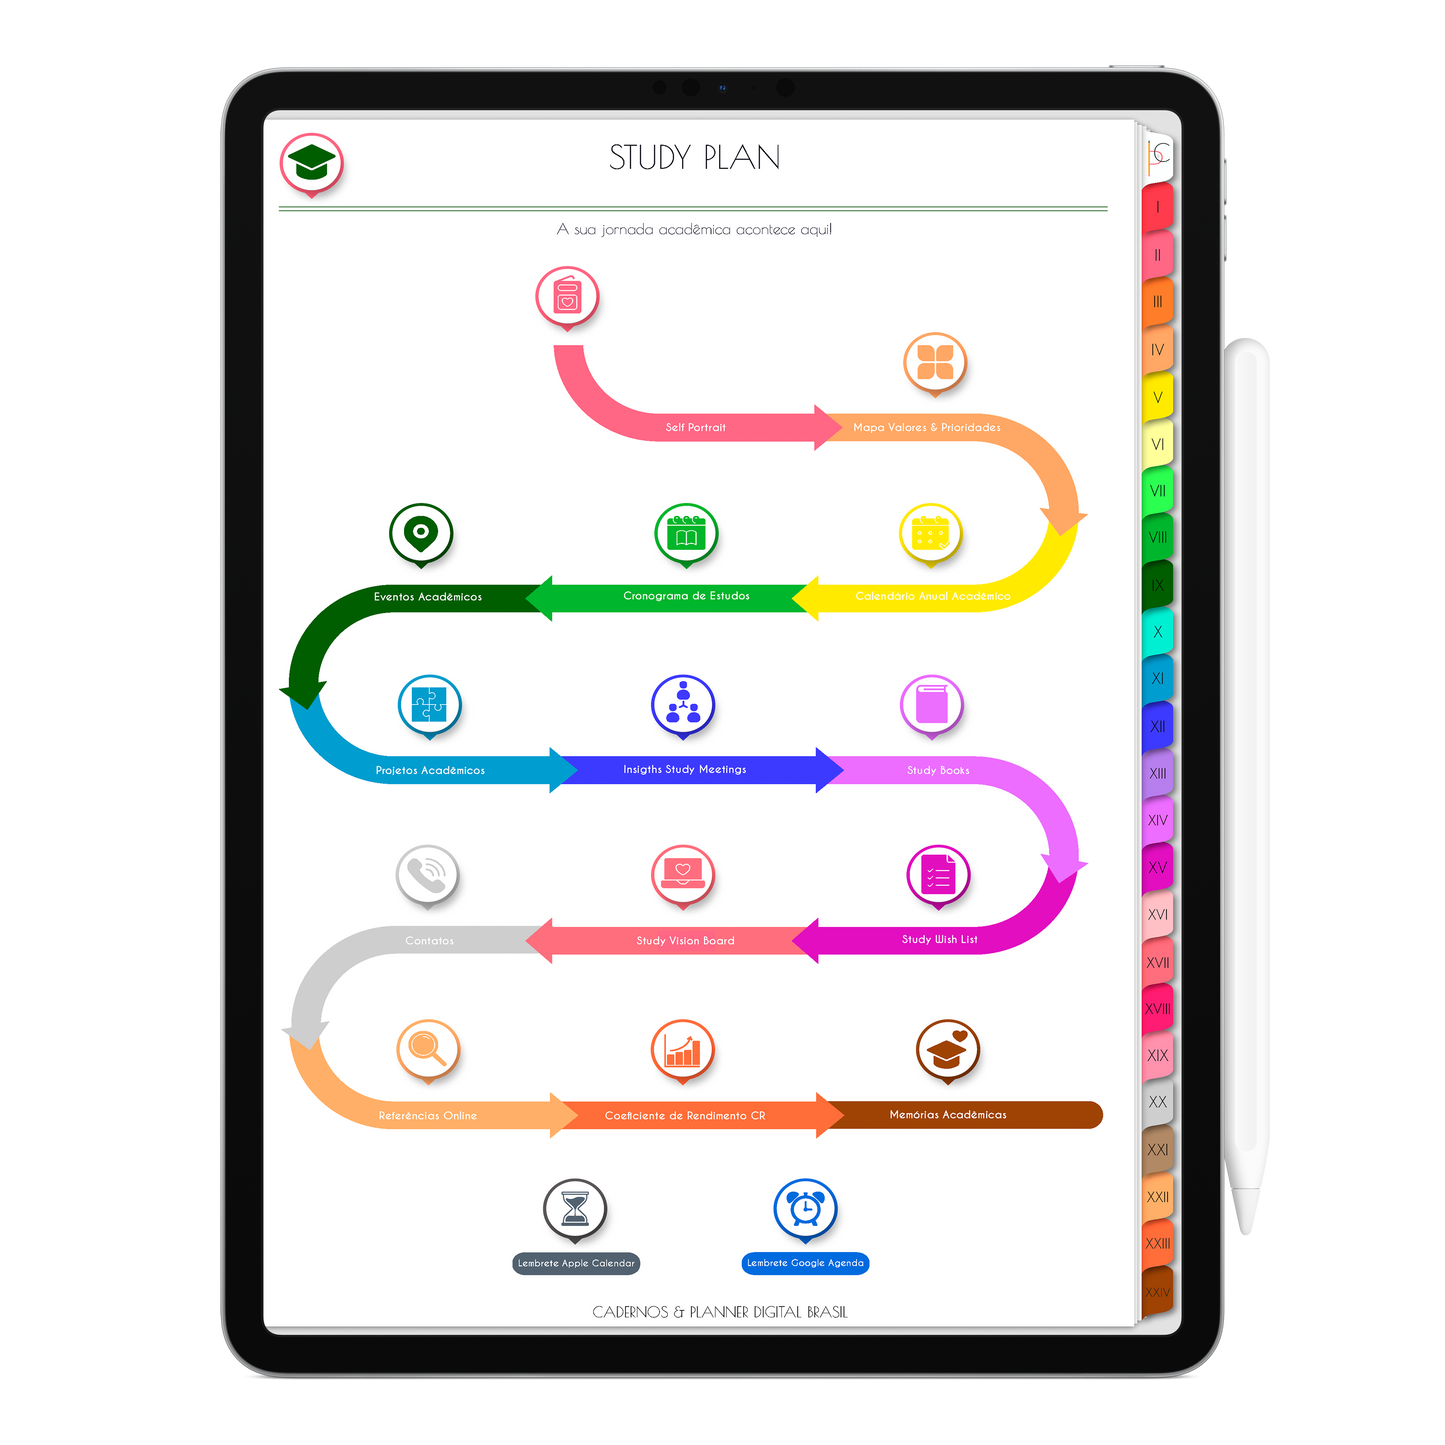 Caderno Digital Colors 24 Matérias Sabor de Verão • Para iPad e Tablet Android • Download instantâneo